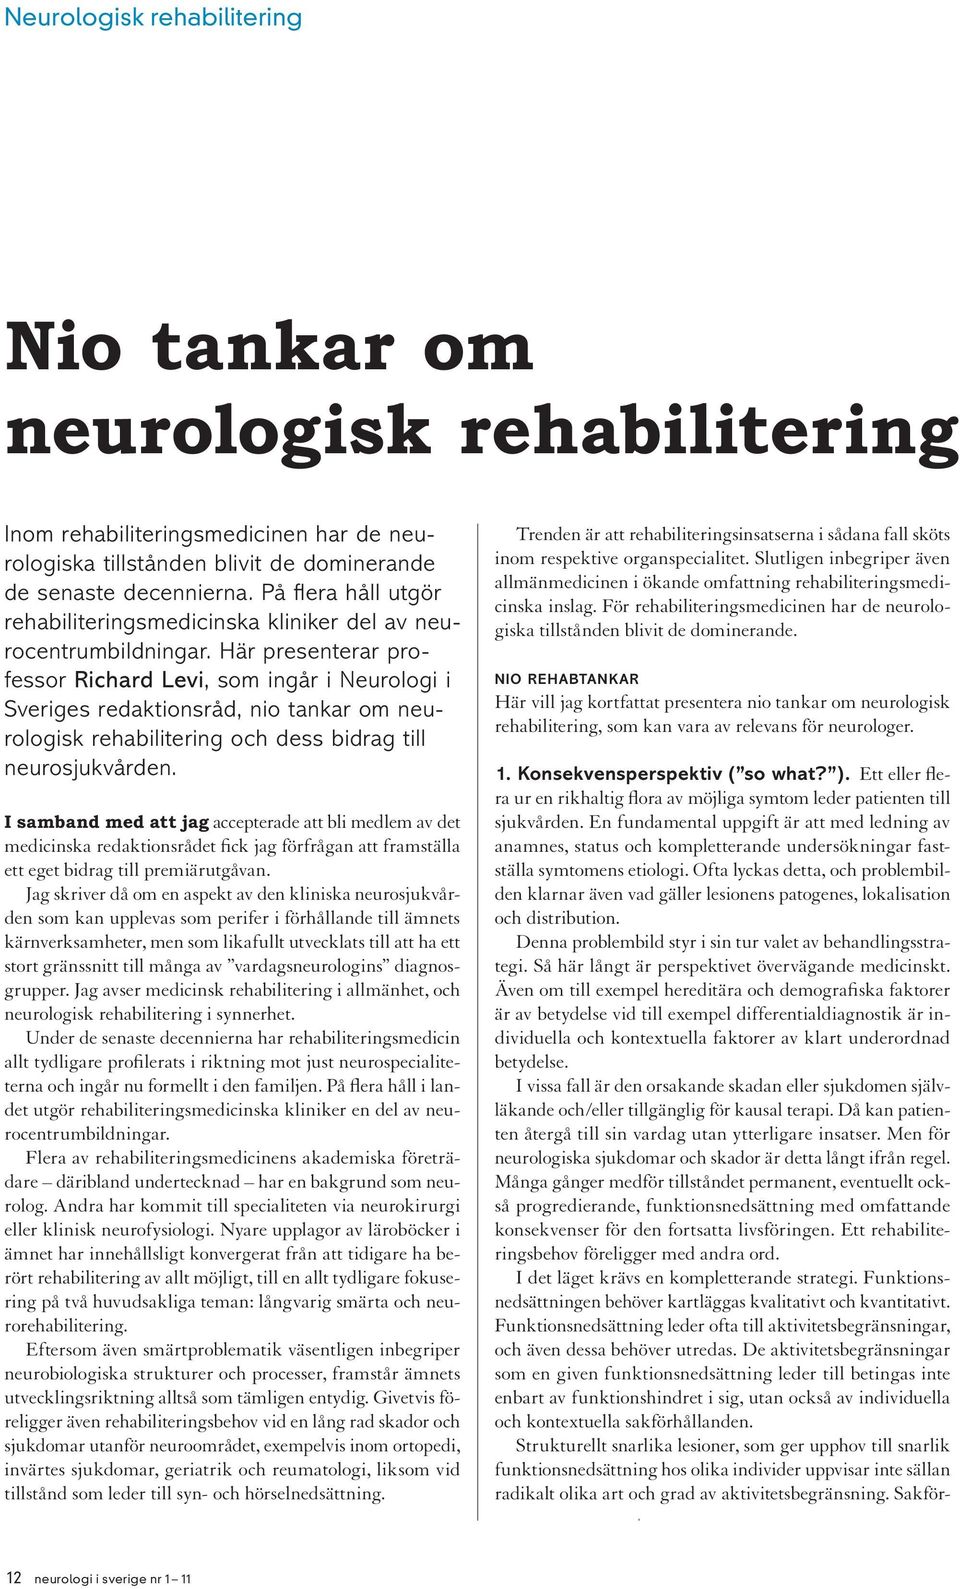 Här presenterar professor Richard Levi, som ingår i Neurologi i Sveriges redaktionsråd, nio tankar om neurologisk rehabilitering och dess bidrag till neurosjukvården.